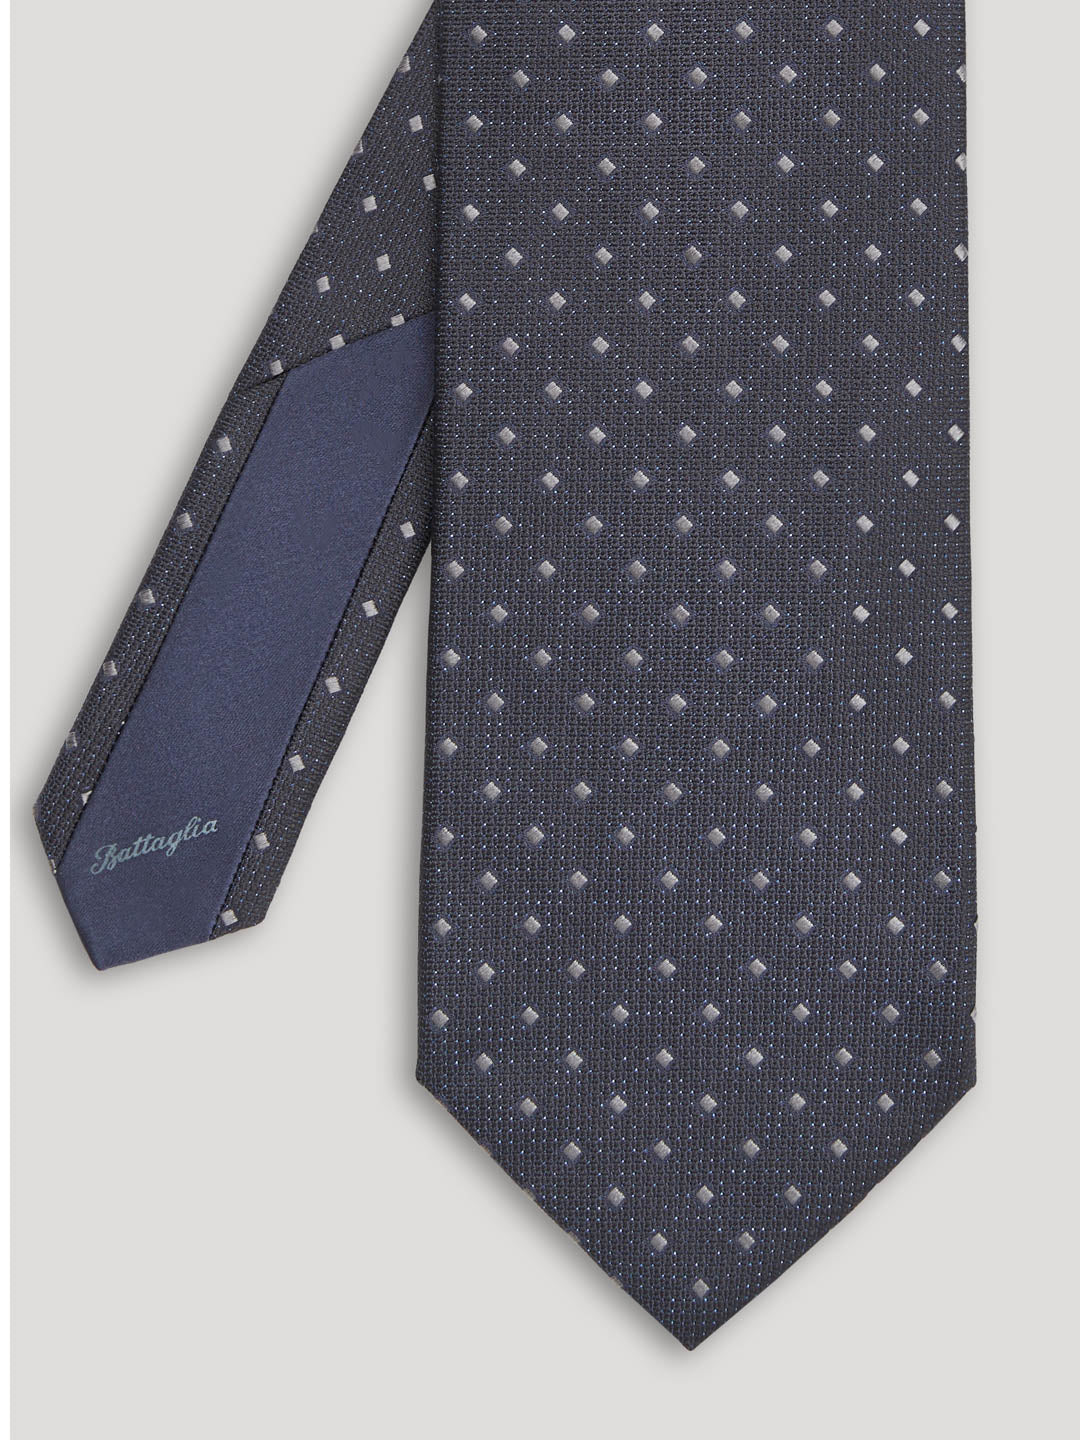 Black tie with small grey diamond design. 